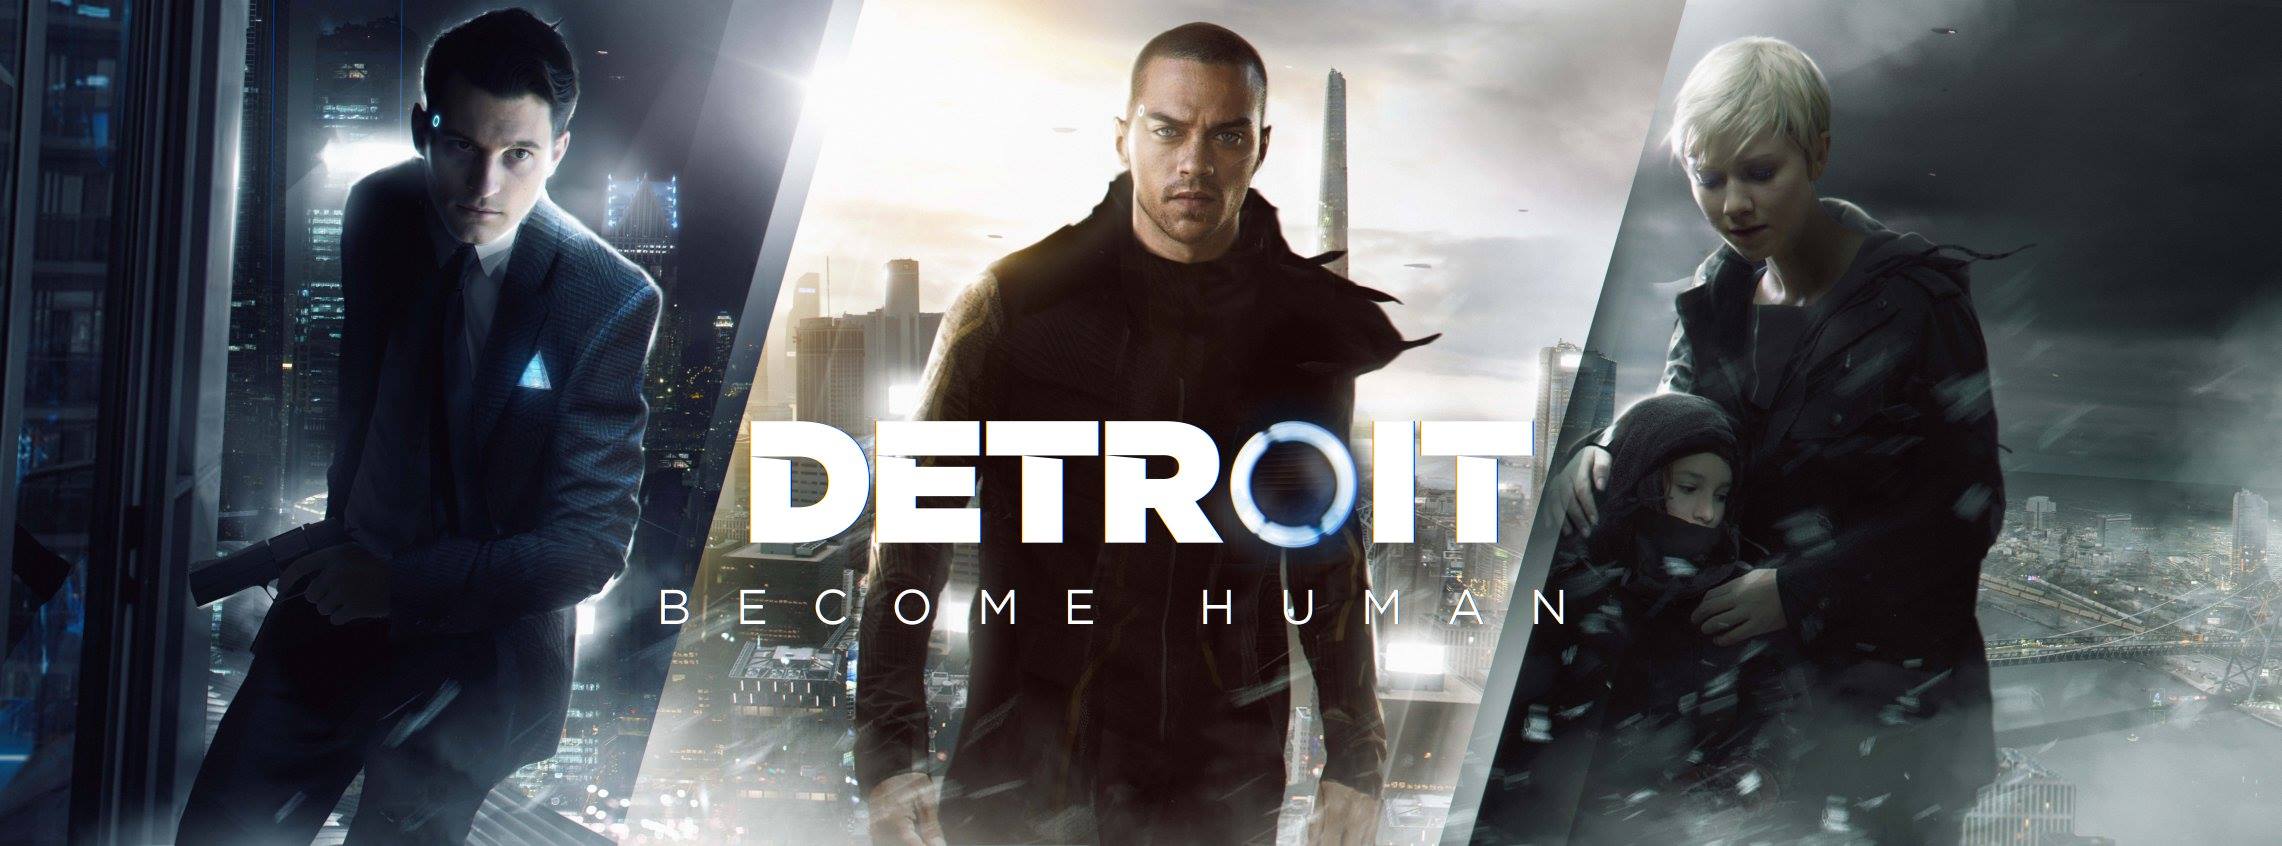 Detroit: Become Human – Offizieller Release-Termin bekannt